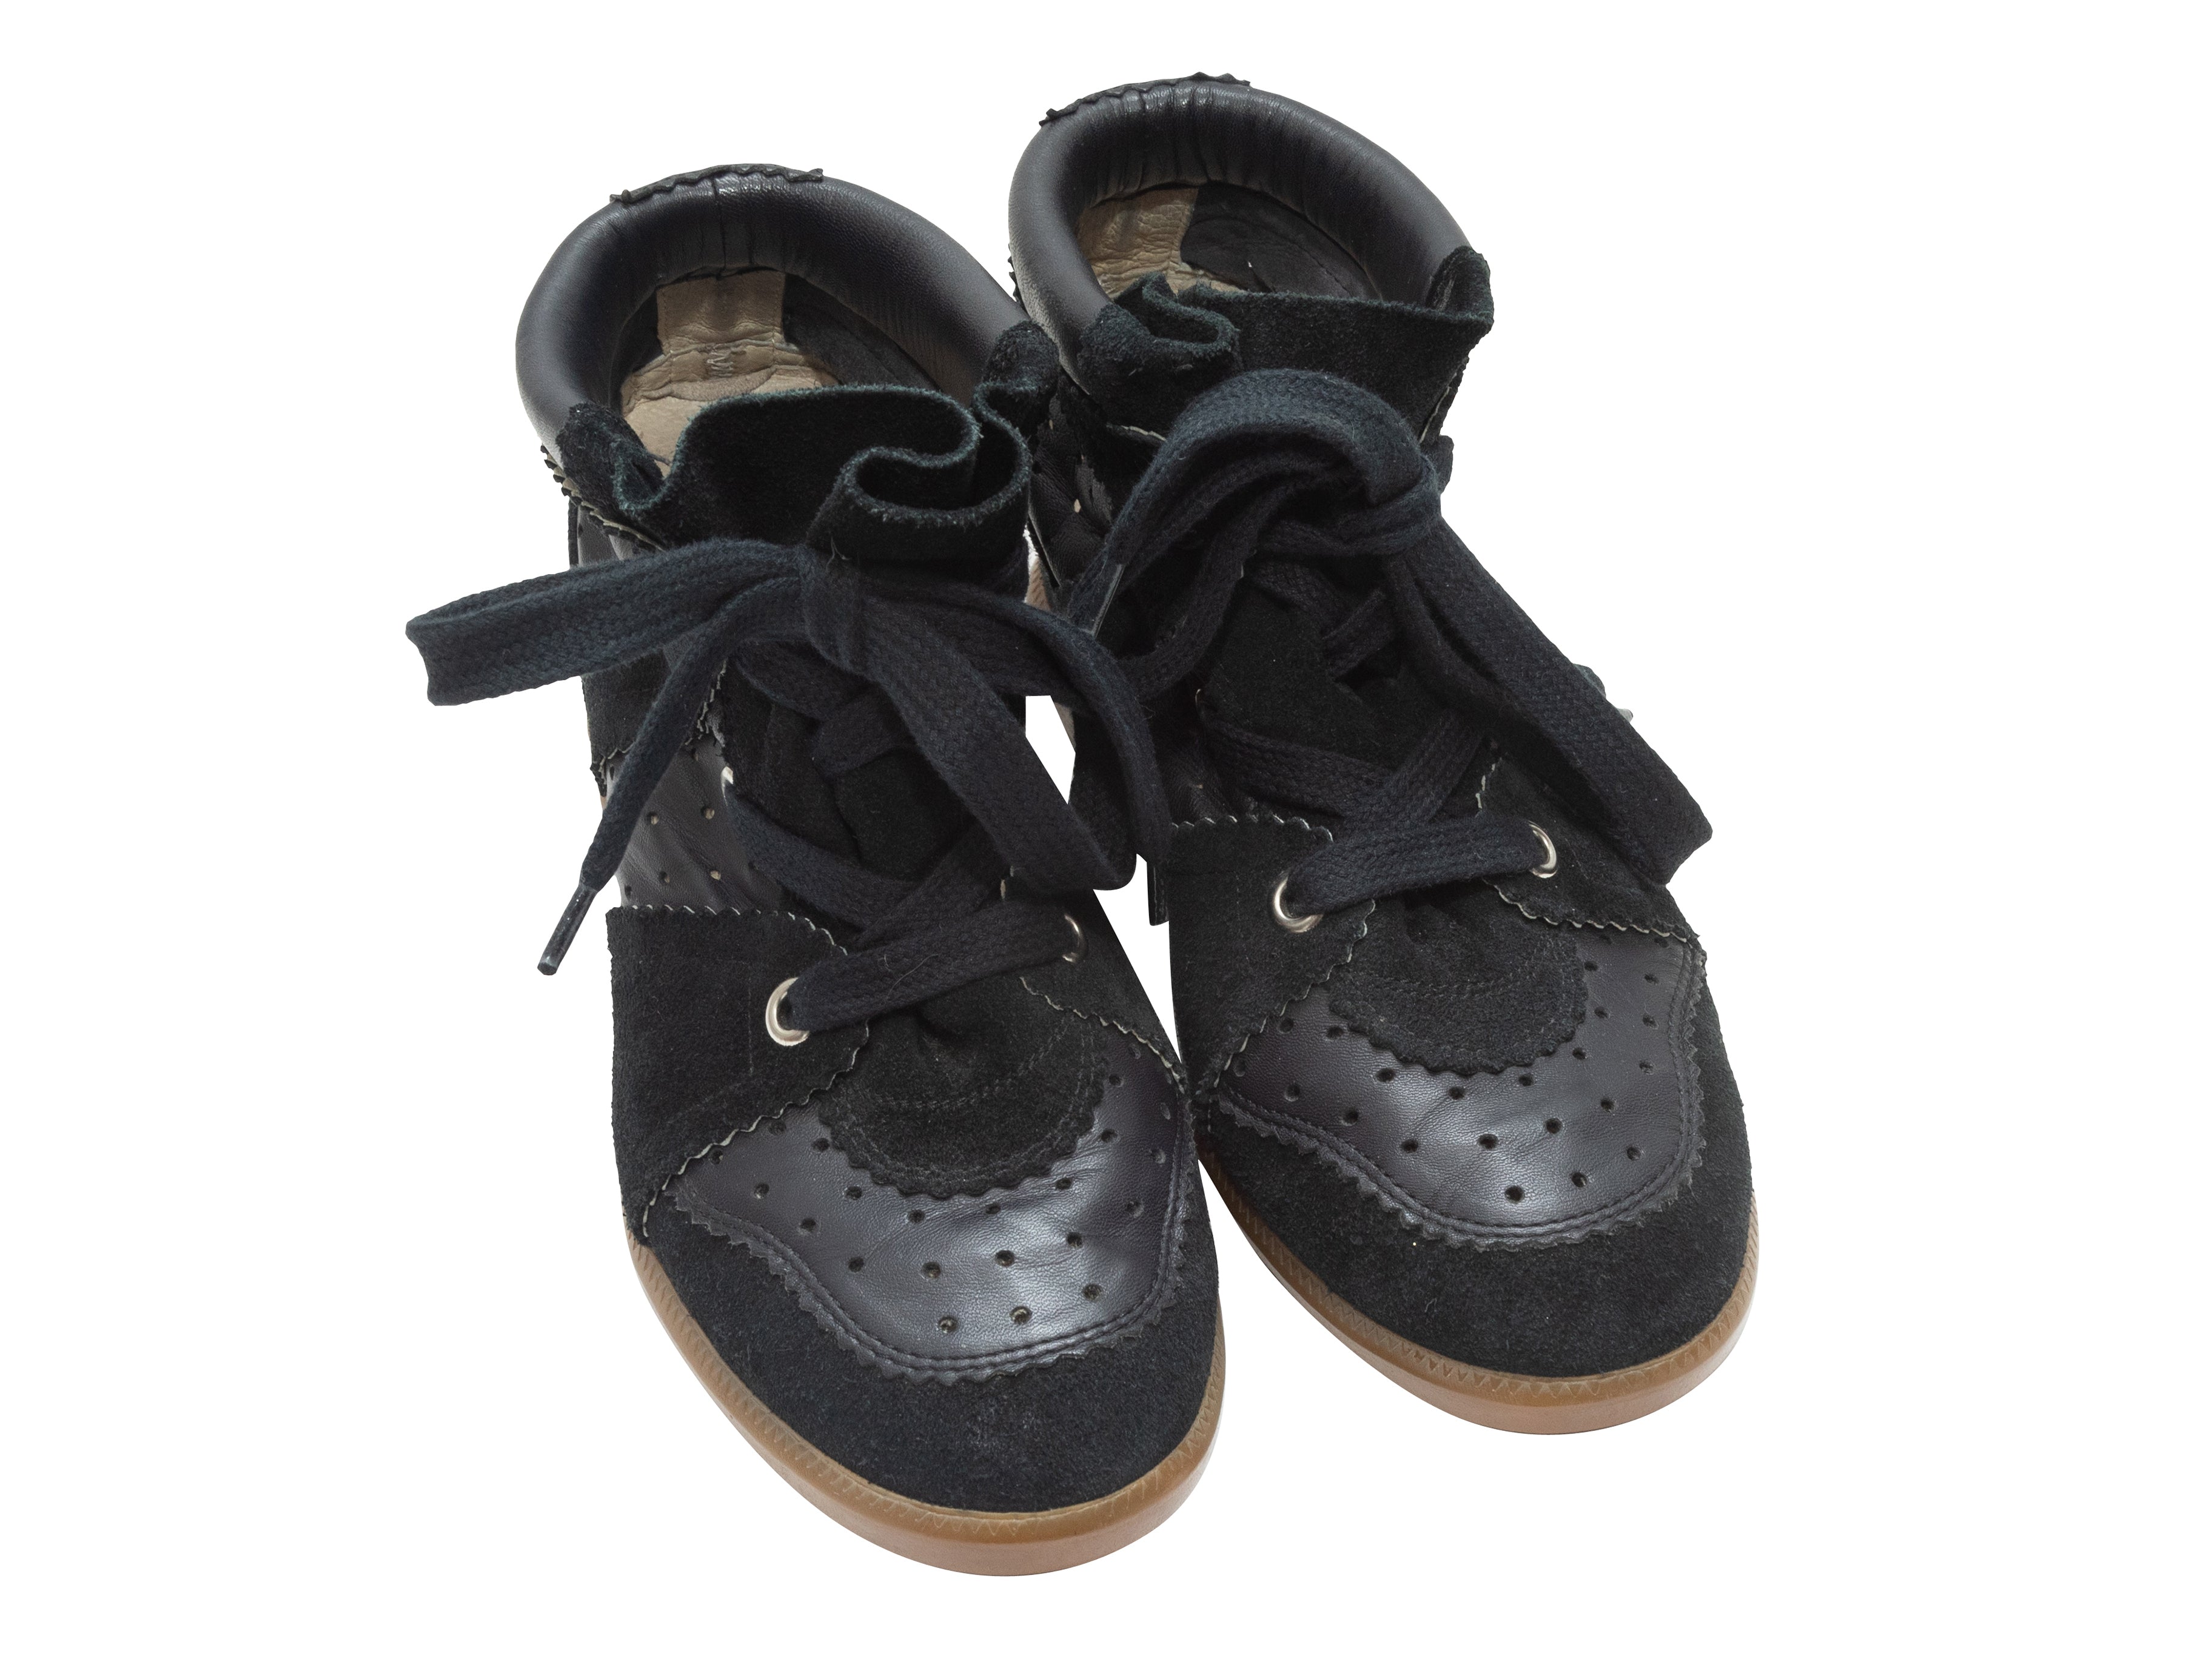 Hubert Hudson Kriminel strand Black Isabel Marant Suede & Leather Wedge Sneakers | Designer Revival